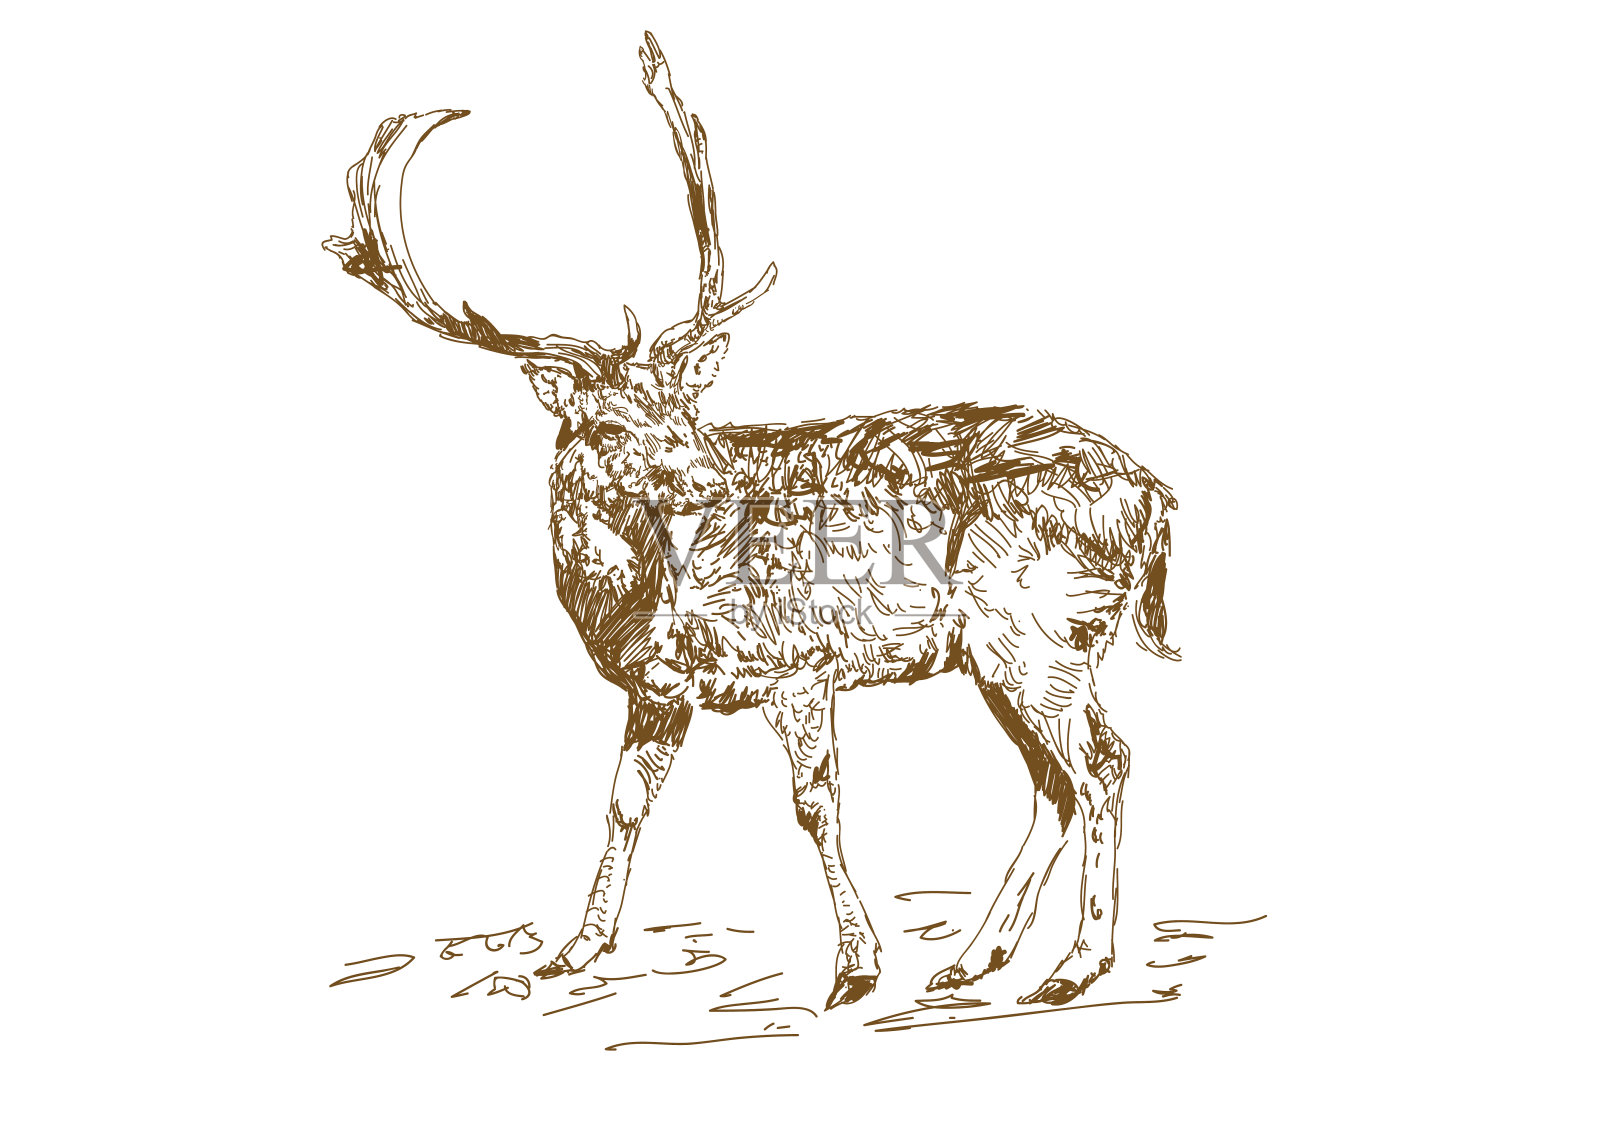 矢量复古风格雕刻手绘鹿类动物狩猎季节。森林鹿与分枝角素描风格。插画图片素材